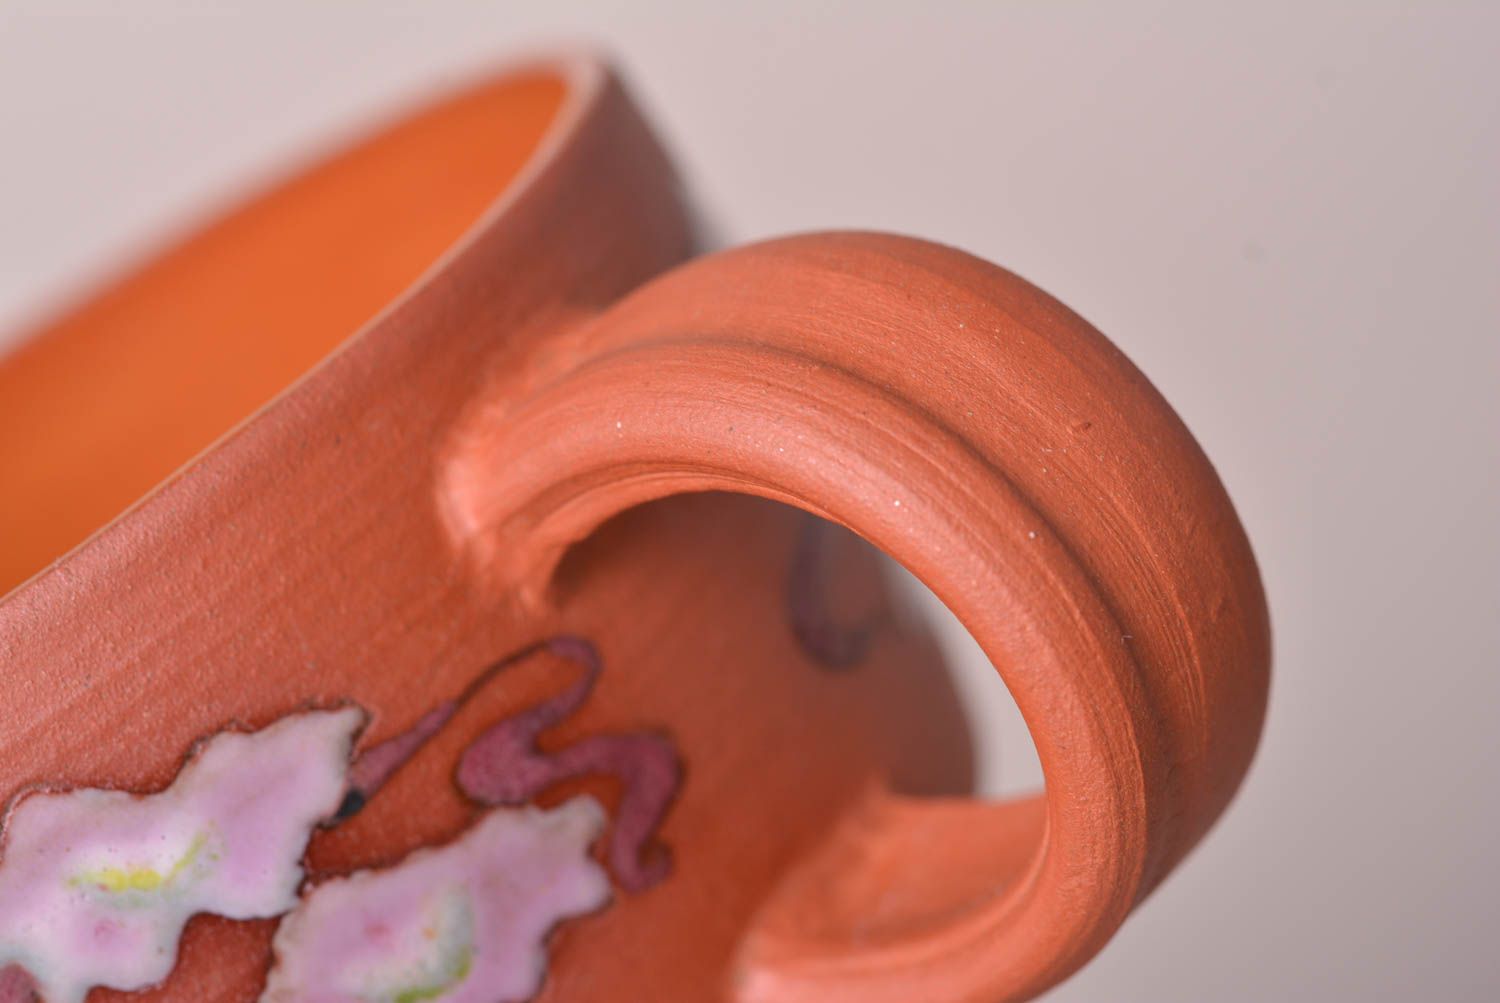 Taza de cerámica hecha a mano utensilio de cocina regalo original para mujer foto 5